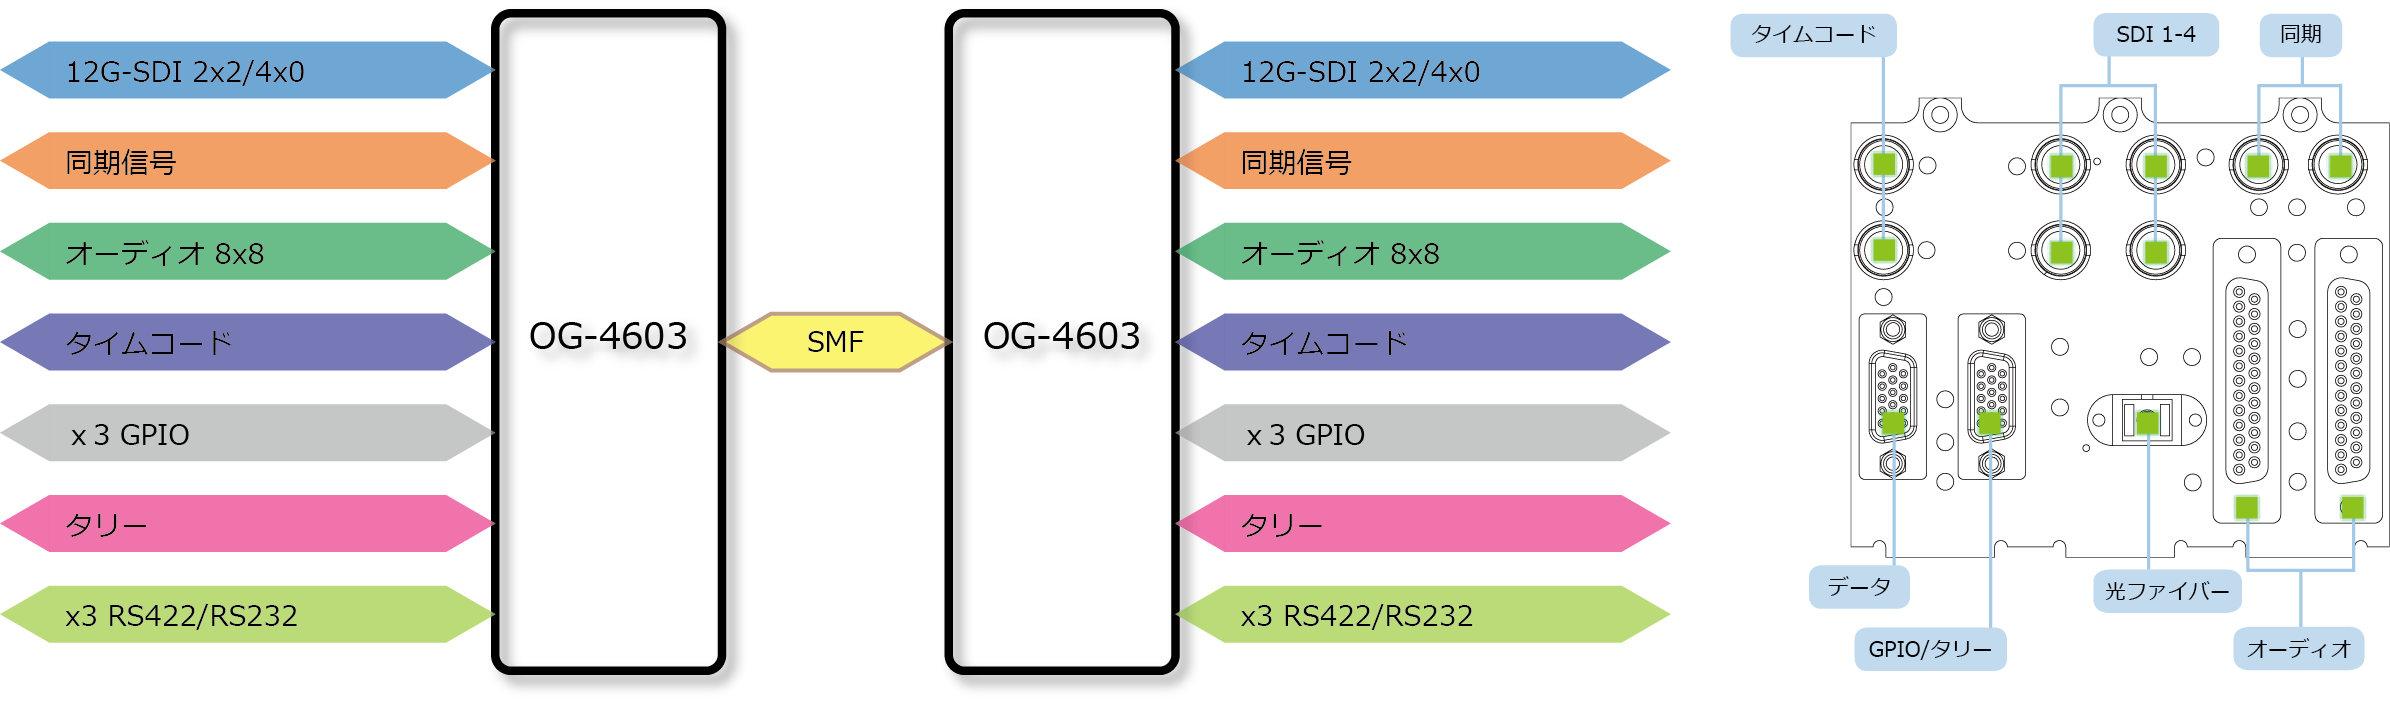 OG-4603 ブロック図/リアパネル図